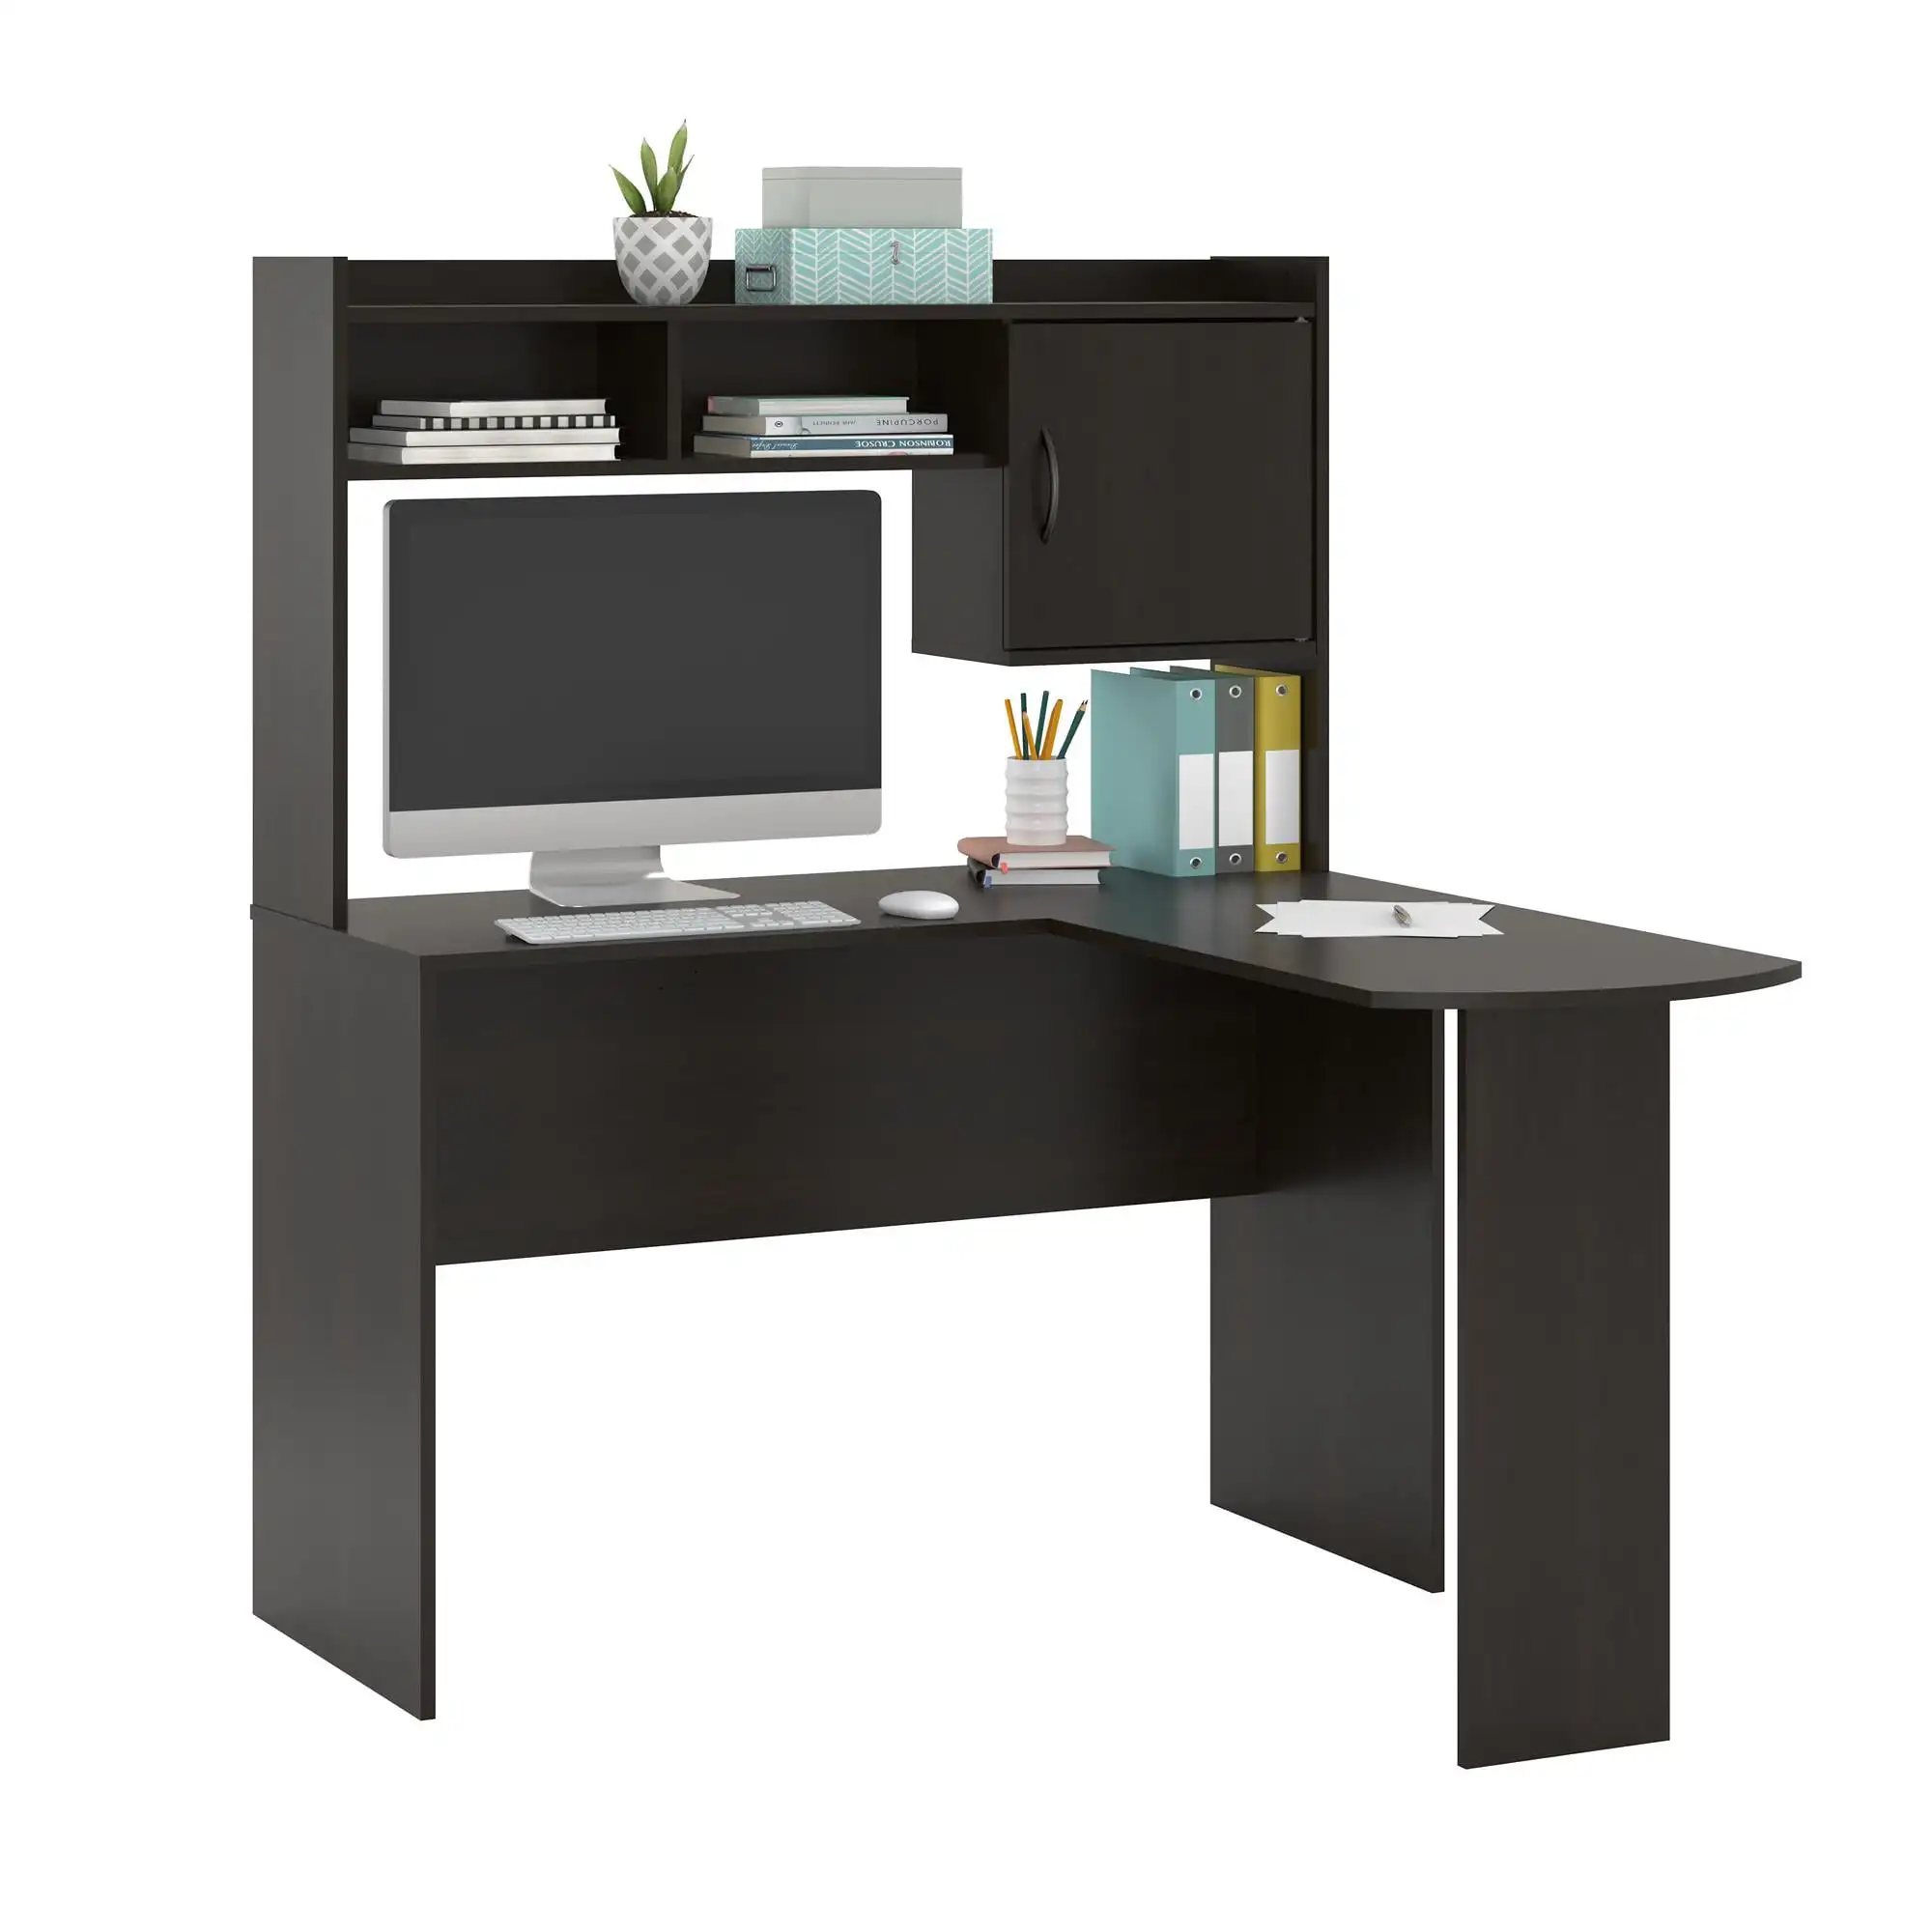 L-Shaped Desk with Hutch, Espresso furniture mesa ordenador escritorio office table